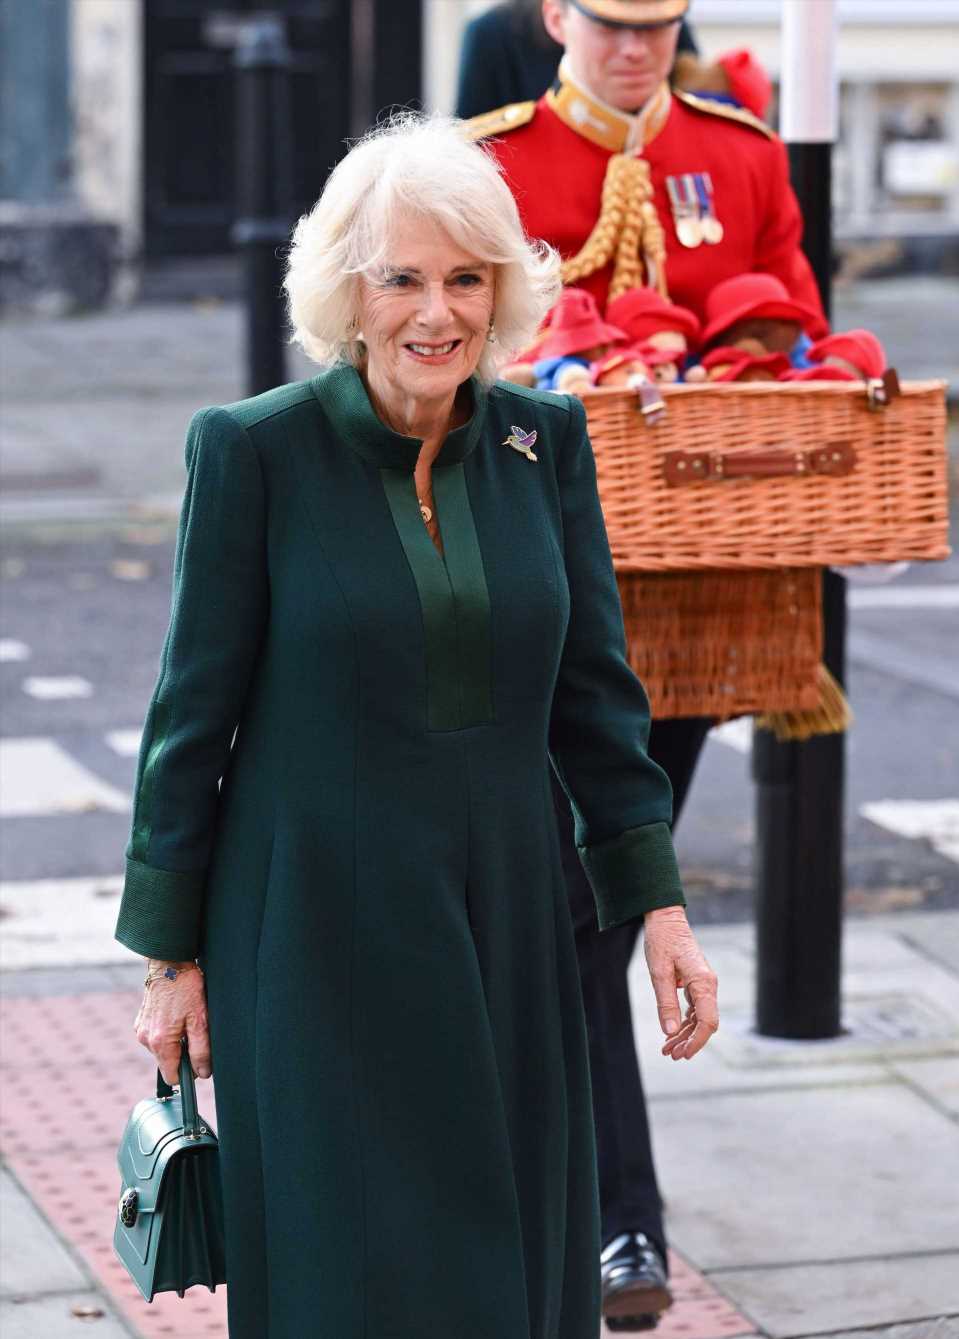 La reina Camilla confirma su gusto por los bolsos de lujo